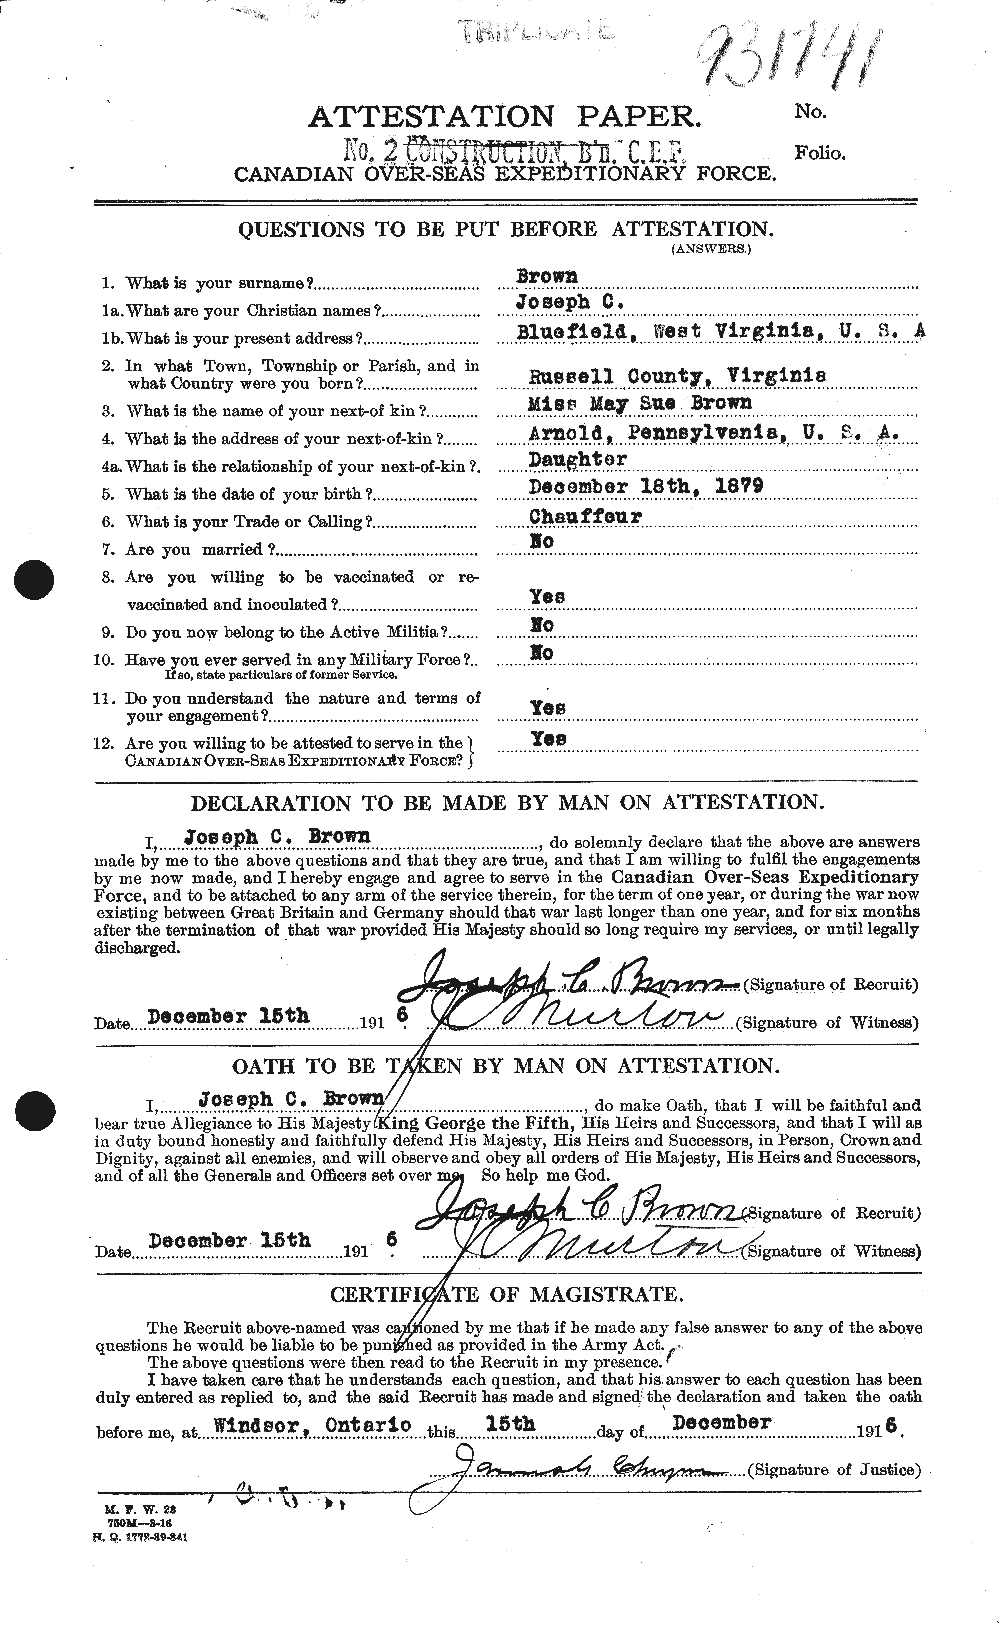 Dossiers du Personnel de la Première Guerre mondiale - CEC 265960a